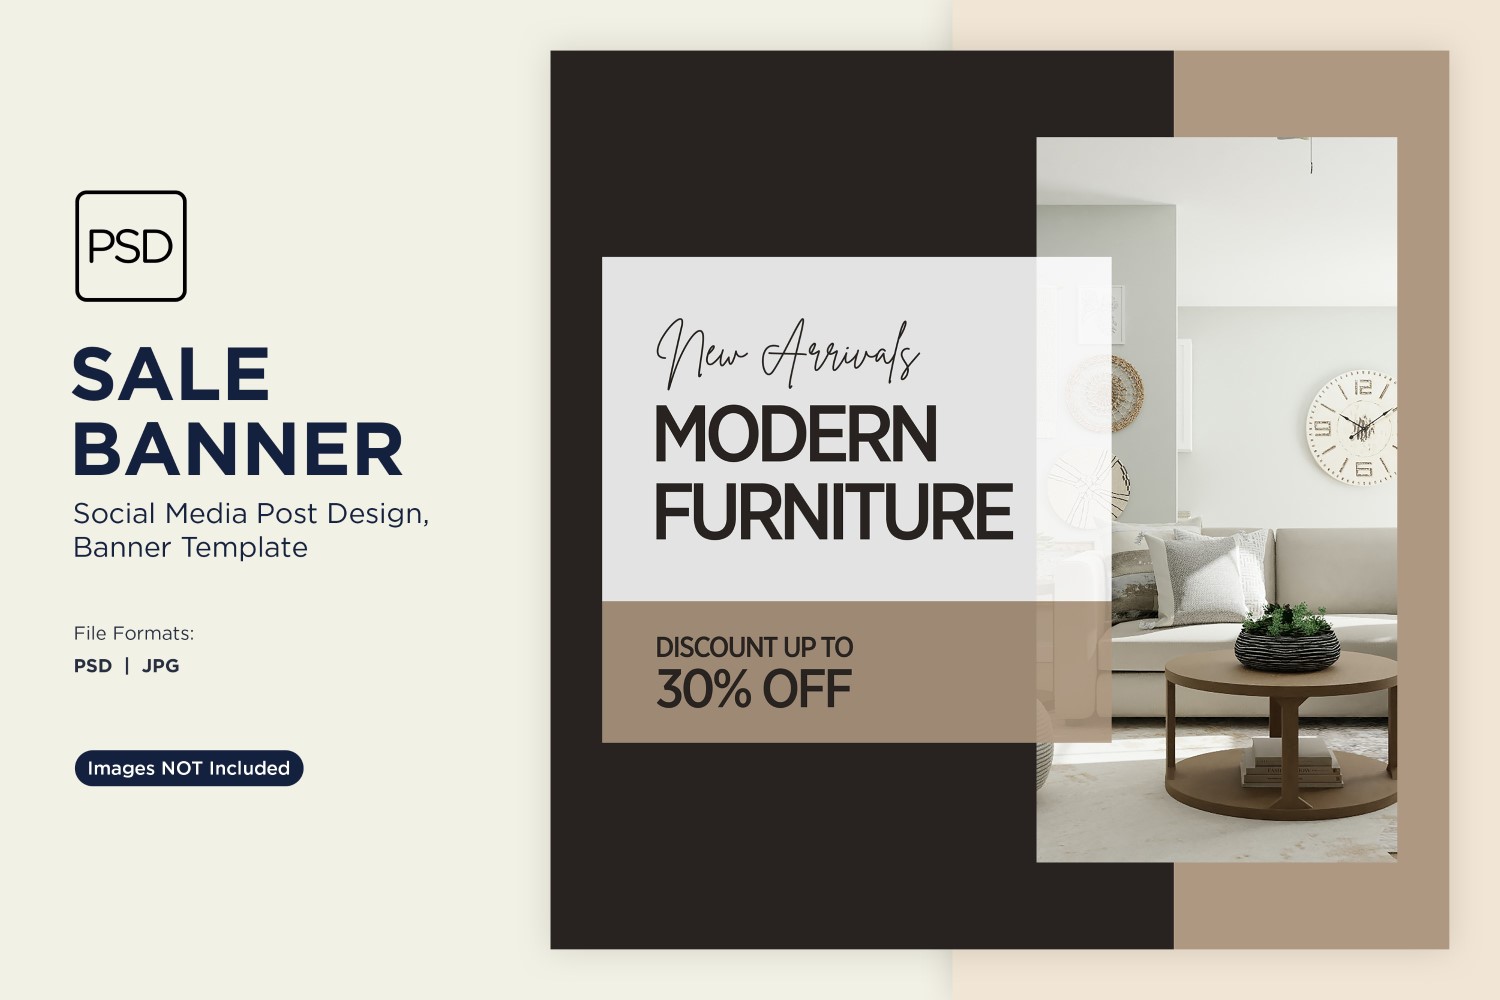 Big Sale on Modern Furniture Banner Design Template 2